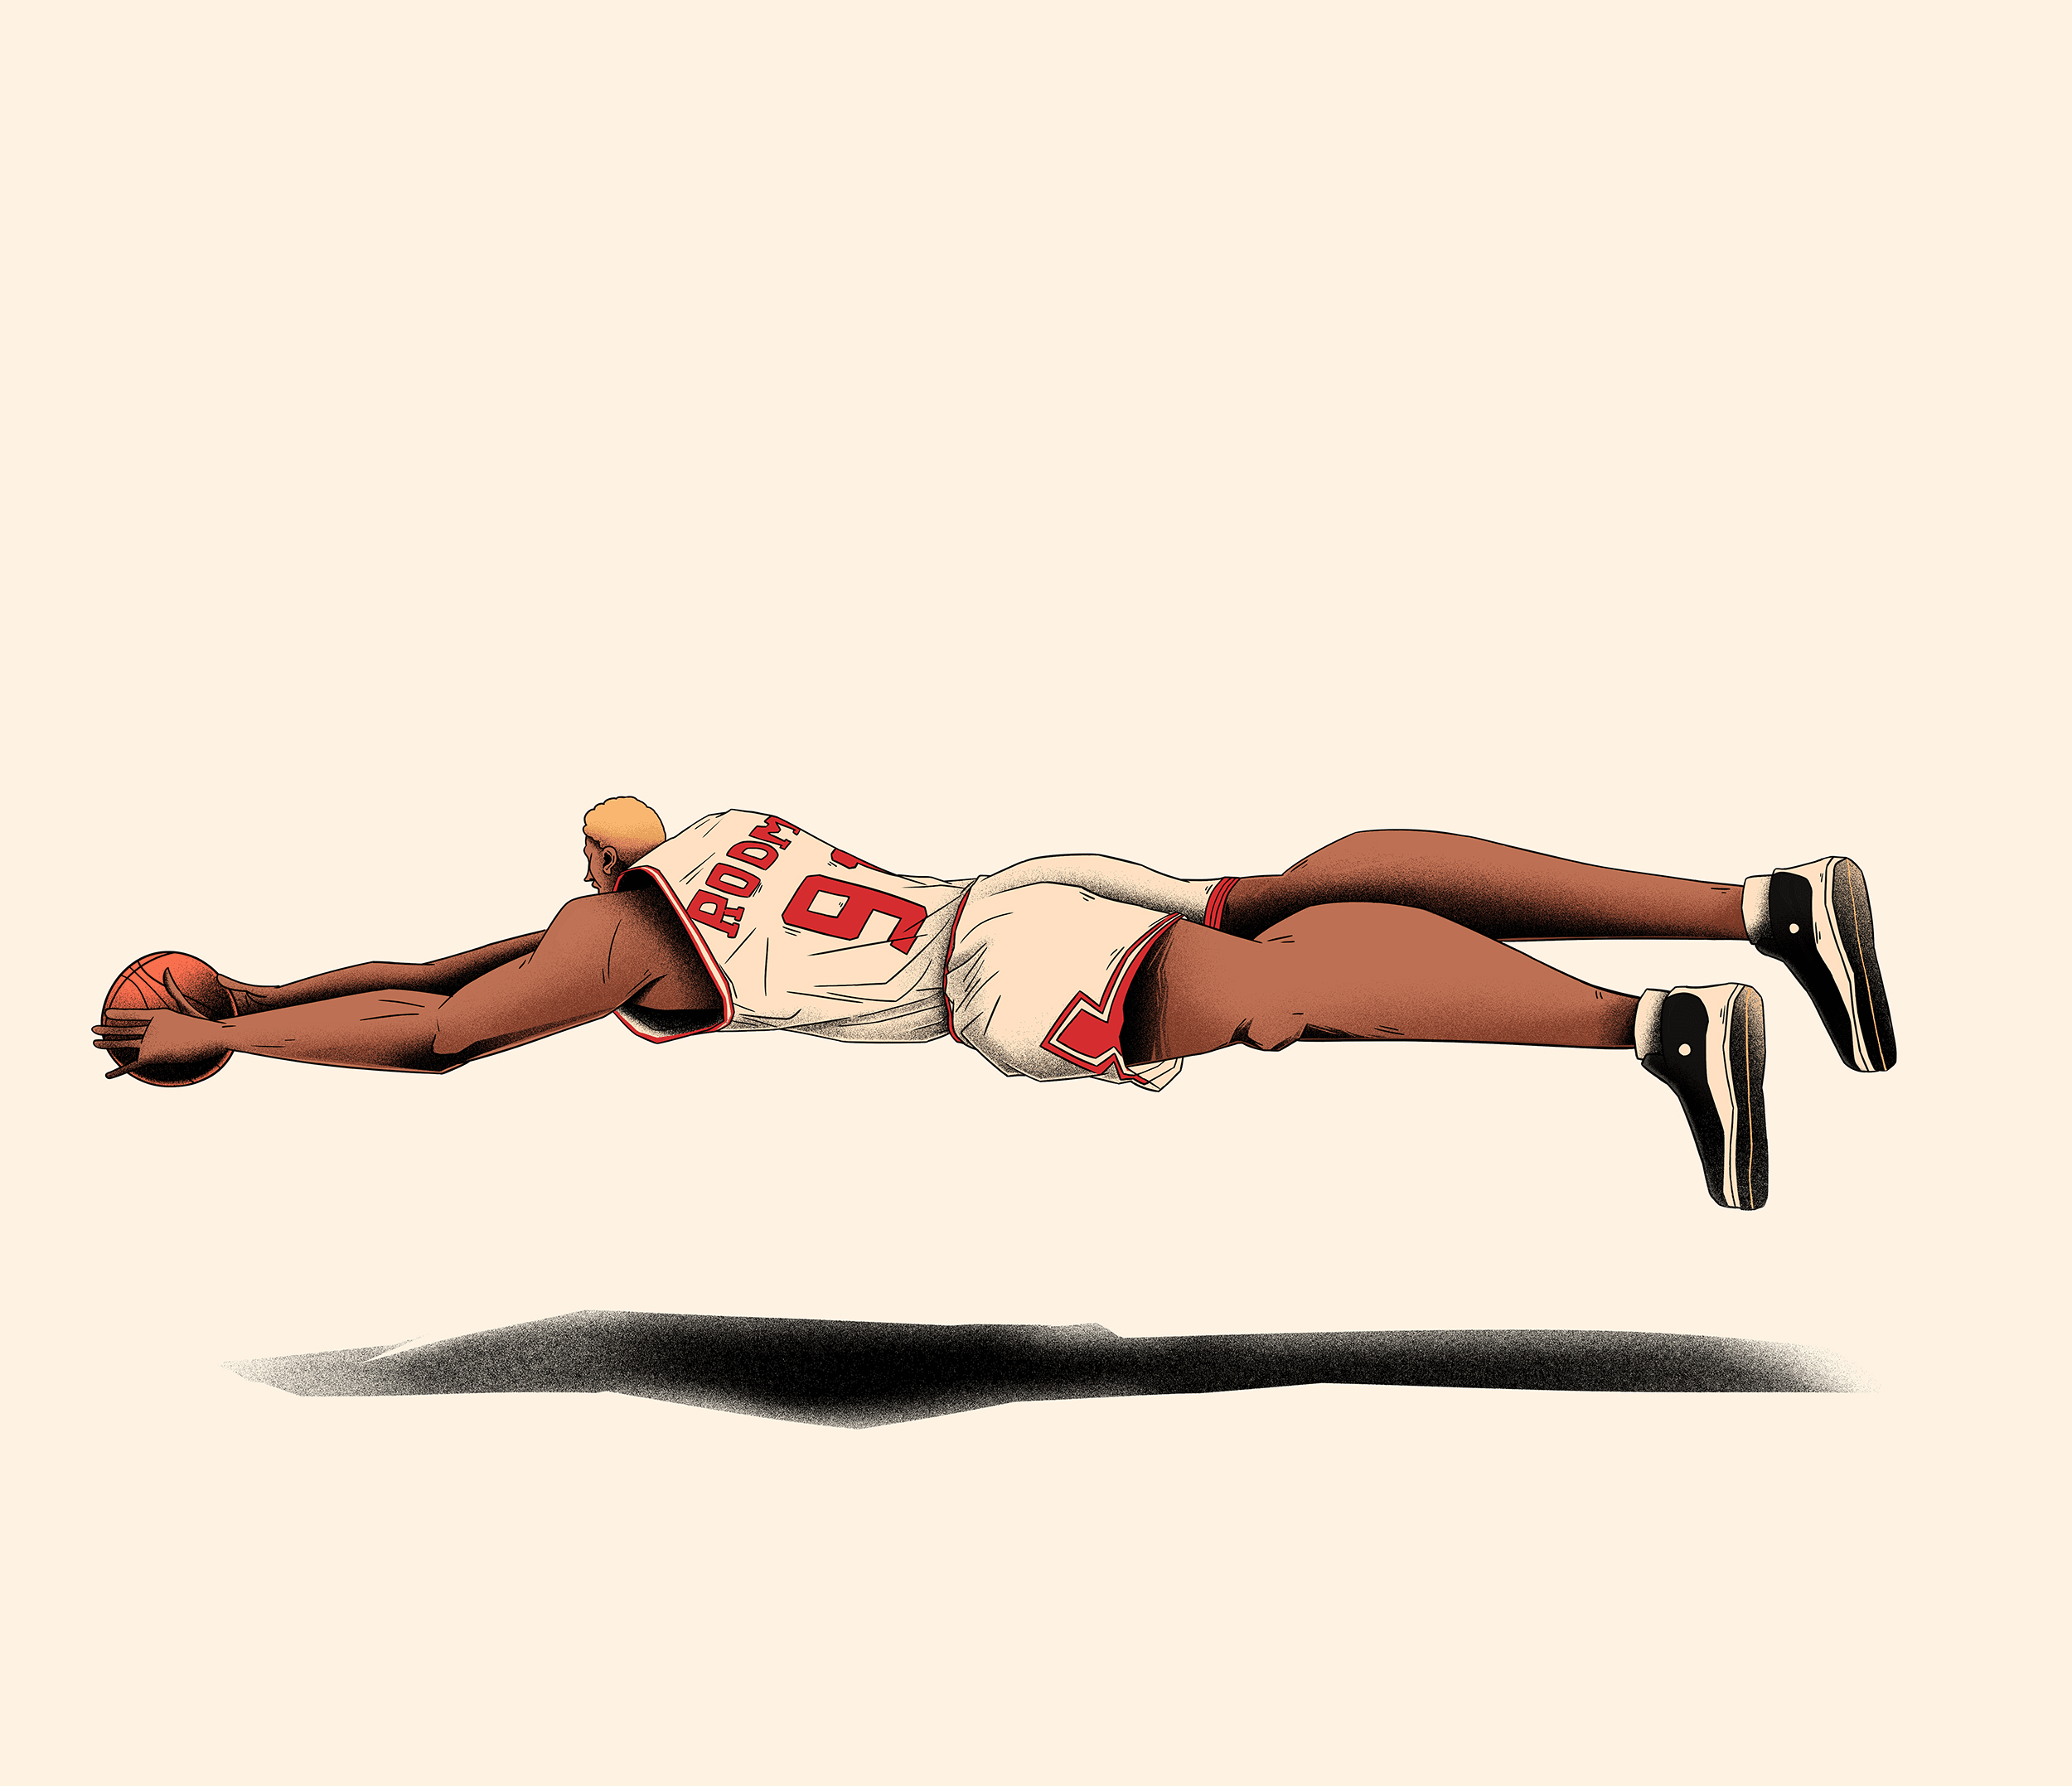 Dennis Rodman @ Chicago Bulls # Dennis Rodman's World